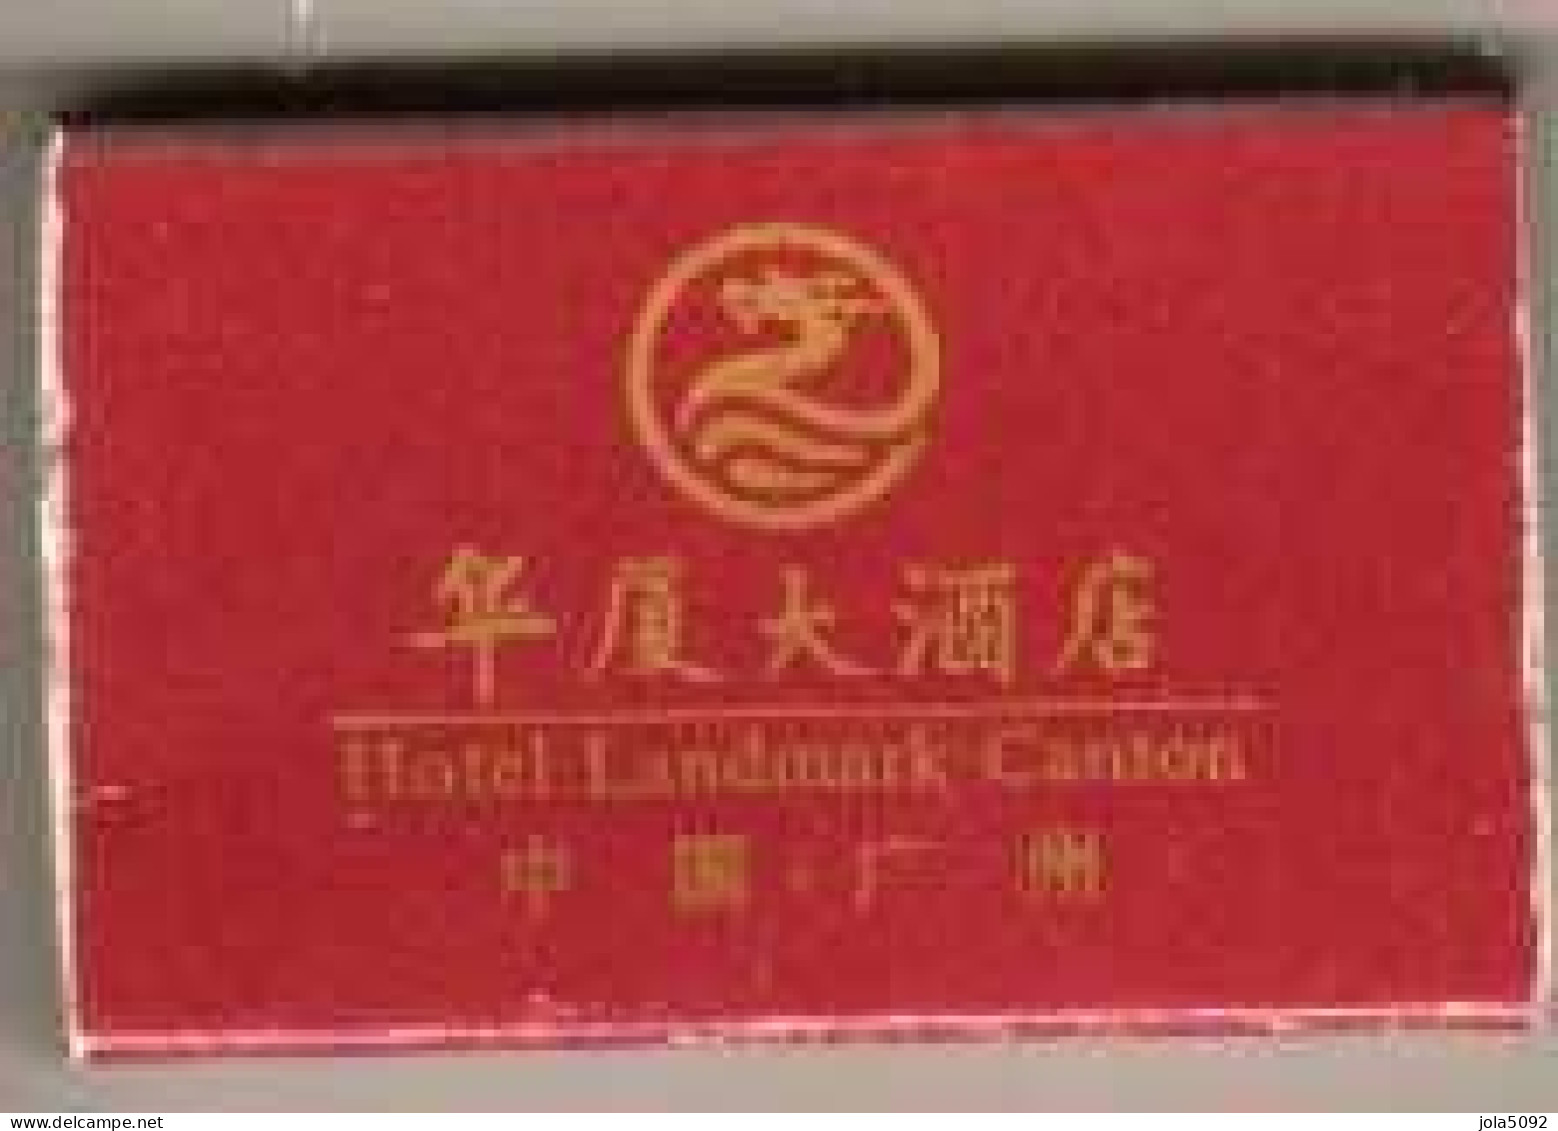 Boîte D'Allumettes - HOTEL LANDMARK - CANTON CHINE - Zündholzschachteln